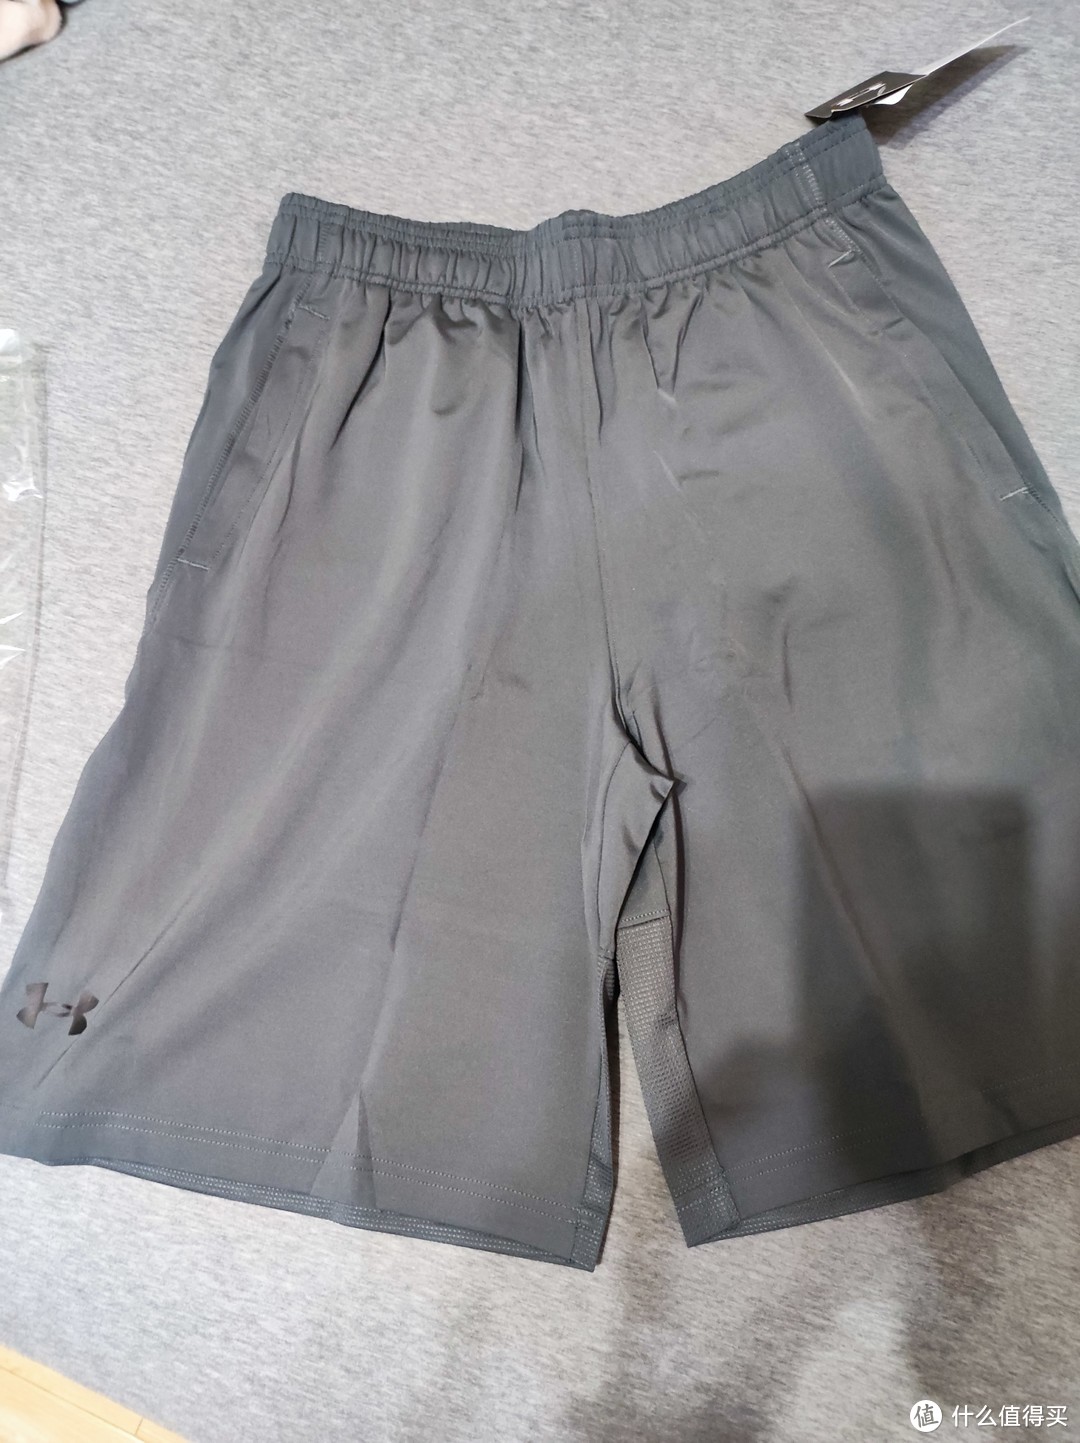 夏天是穿短裤的季节——安德玛Raid 2.0 男子训练运动短裤